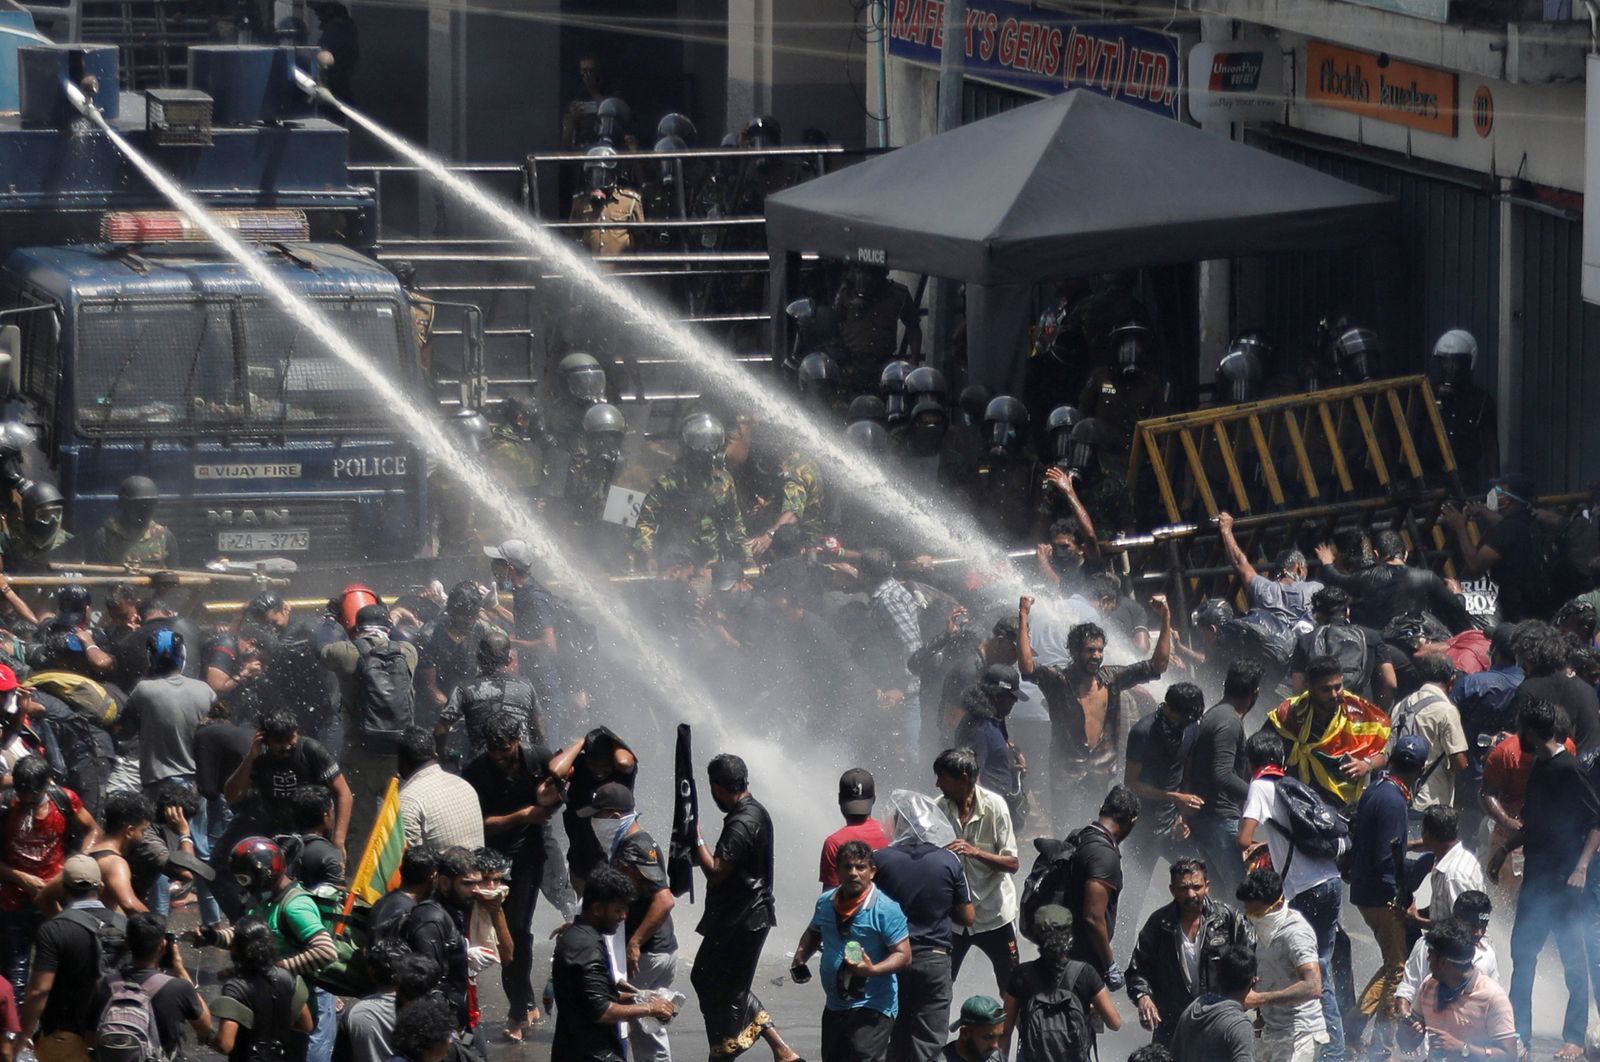 الشرطة تستخدم الغاز المسيل للدموع وخراطيم المياه لتفريق المتظاهرين بالقرب من مقر إقامة الرئيس السريلانكي - 9 يوليو 2022 - REUTERS